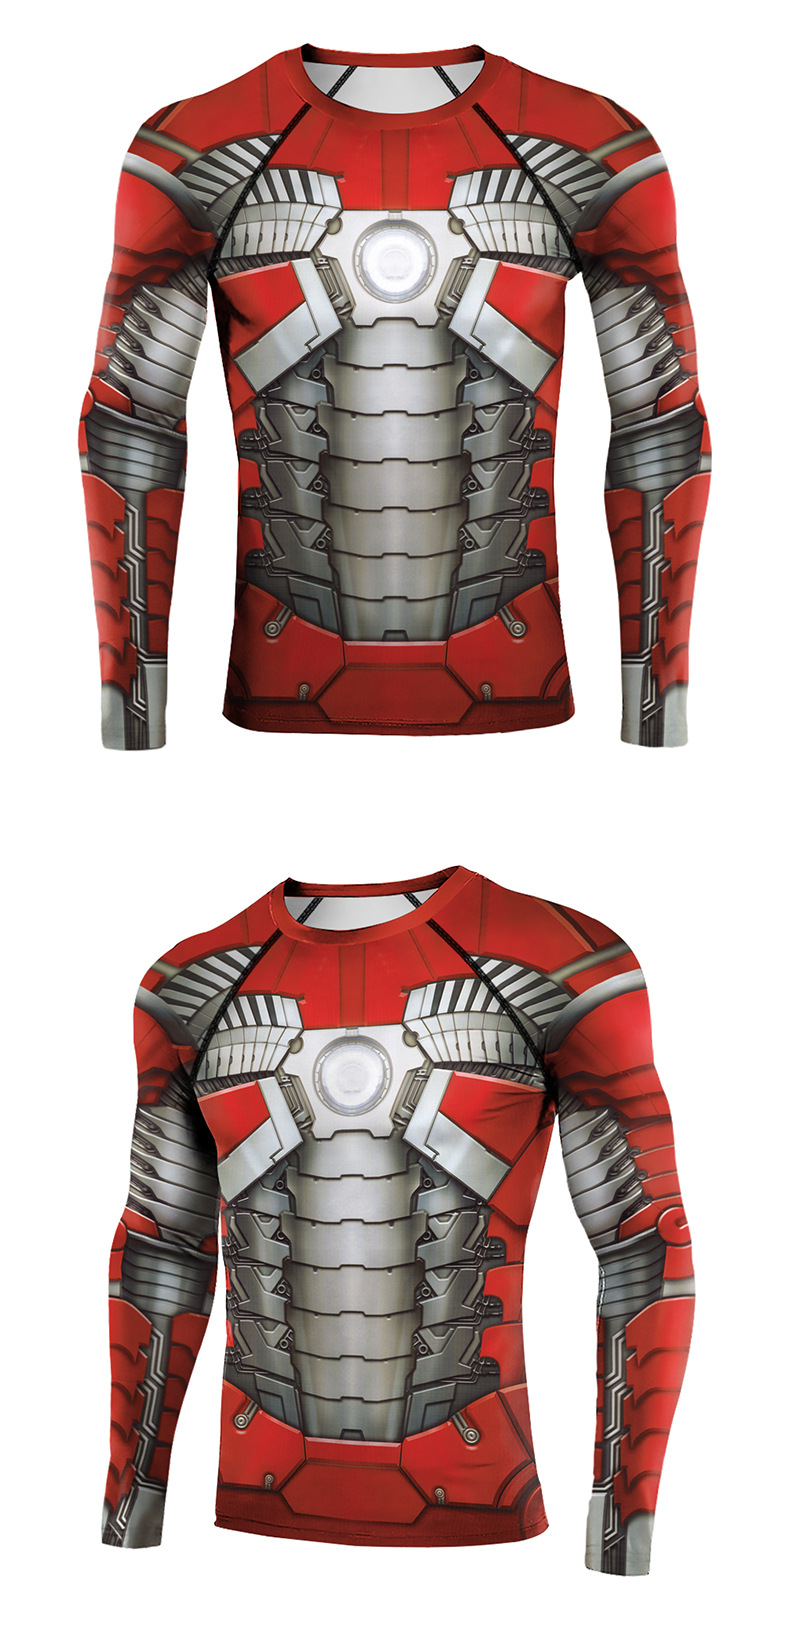 Marvel Avenger Iron Man 2 Mark V Long Sleeve Tee shirt